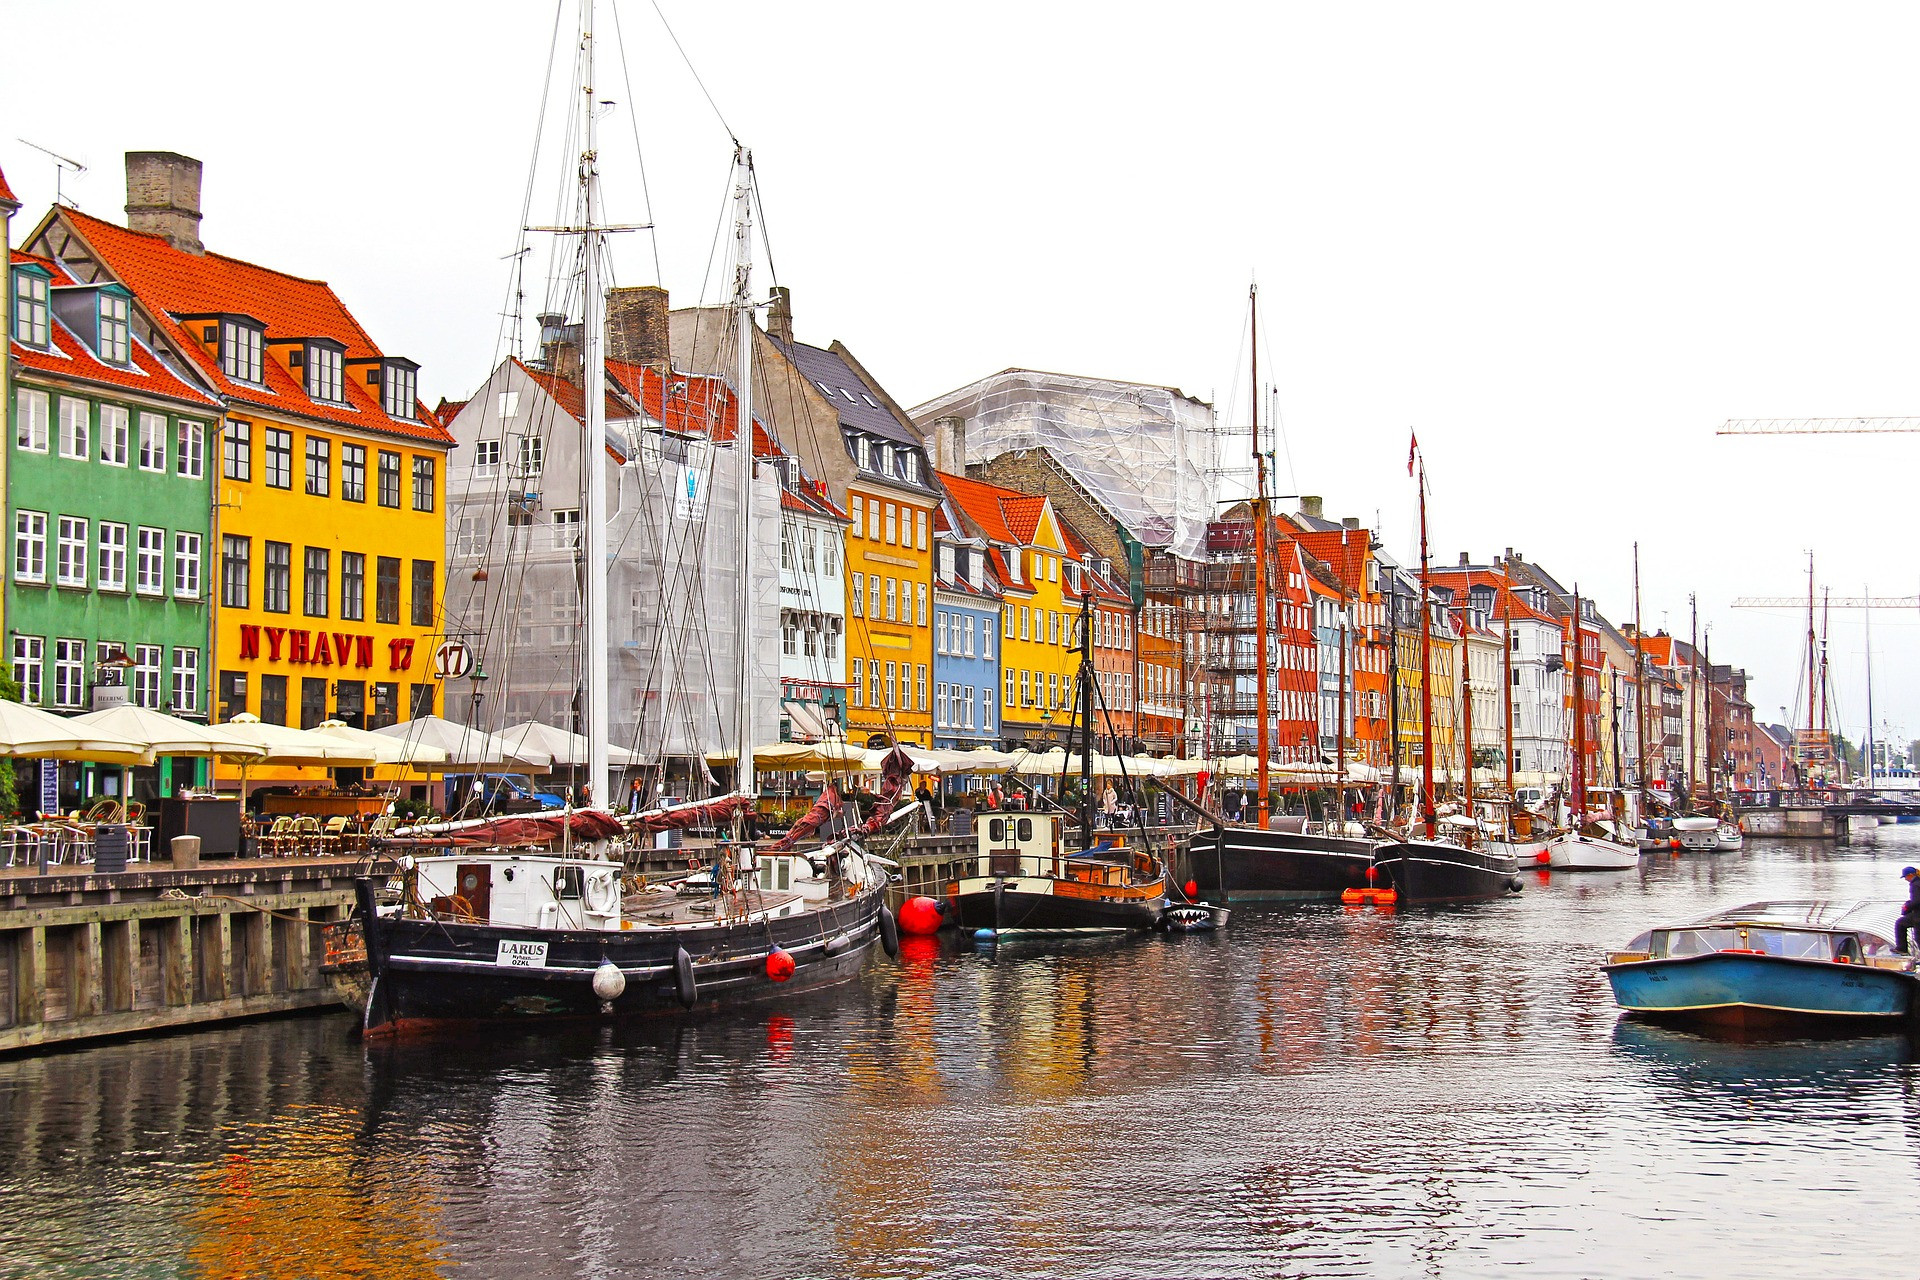 Od mája do októbra je v Kodani najväčšia turistická sezóna a v tomto malom, ale nádhernom meste môžete zažiť skutočnú tlačenicu. Navštívte ho preto v apríli a ušetríte 38 percent za  izbu bez toho, aby ste sa zaoberali škandinávskymi extrémne krátkymi dňami a veľmi nízkymi zimnými teplotami.